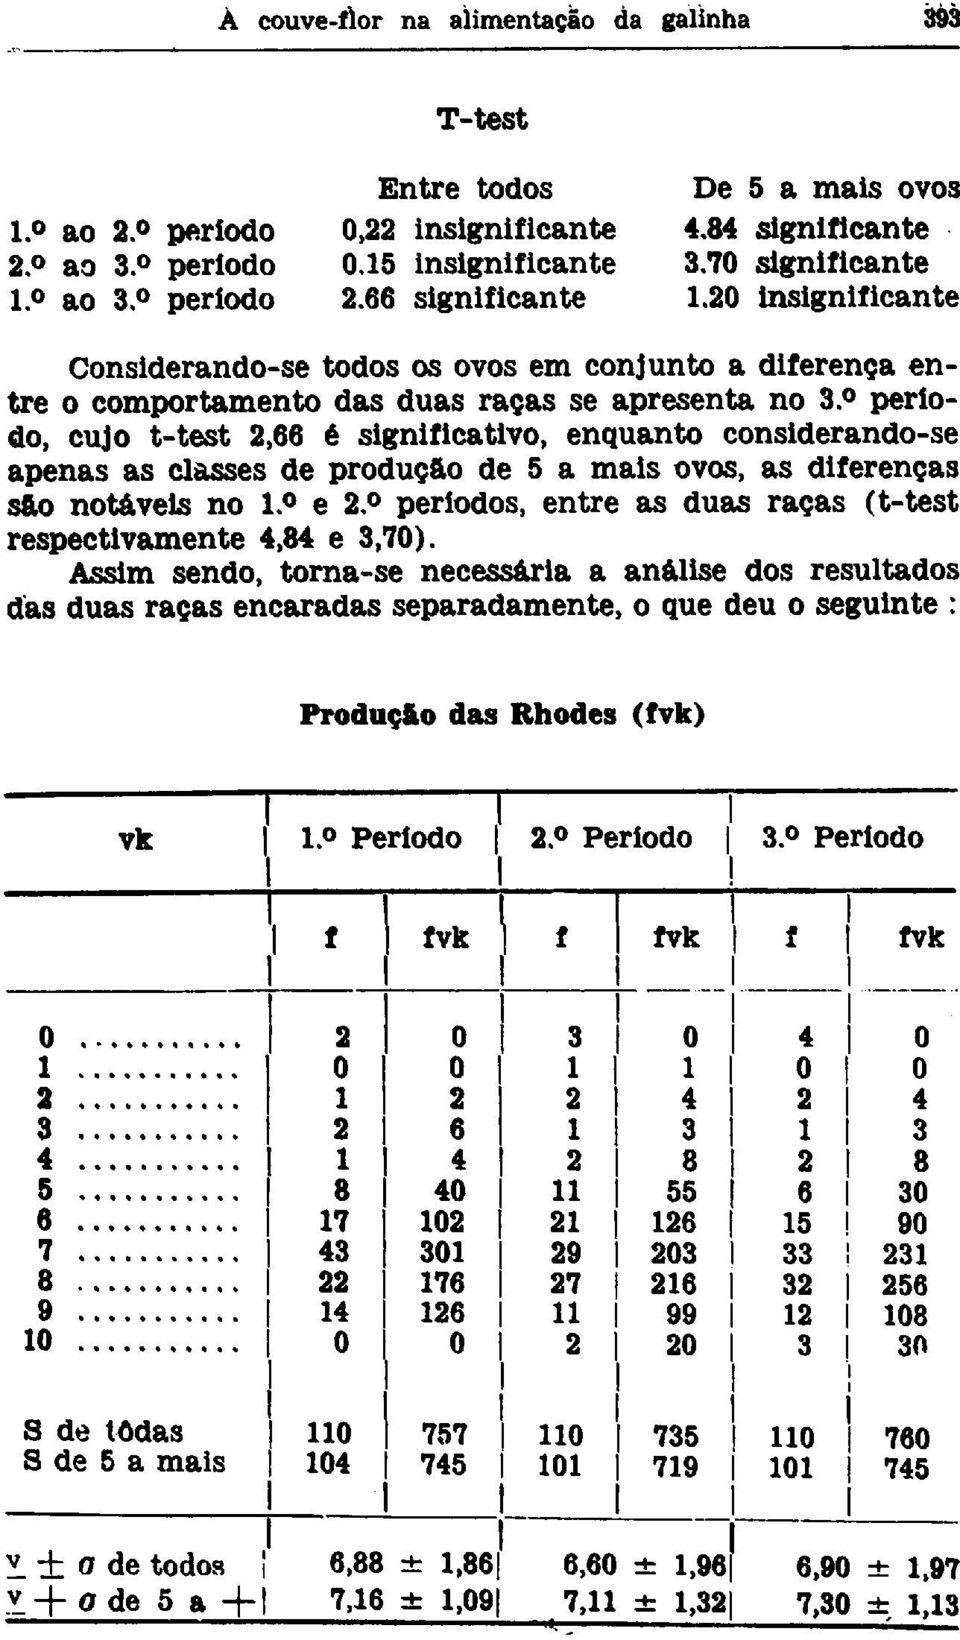 período, cujo t-test 2,66 é significativo, enquanto considerando-se apenas as classes de produção de 5 a mais ovos, as diferenças sao notáveis no l. e 2.